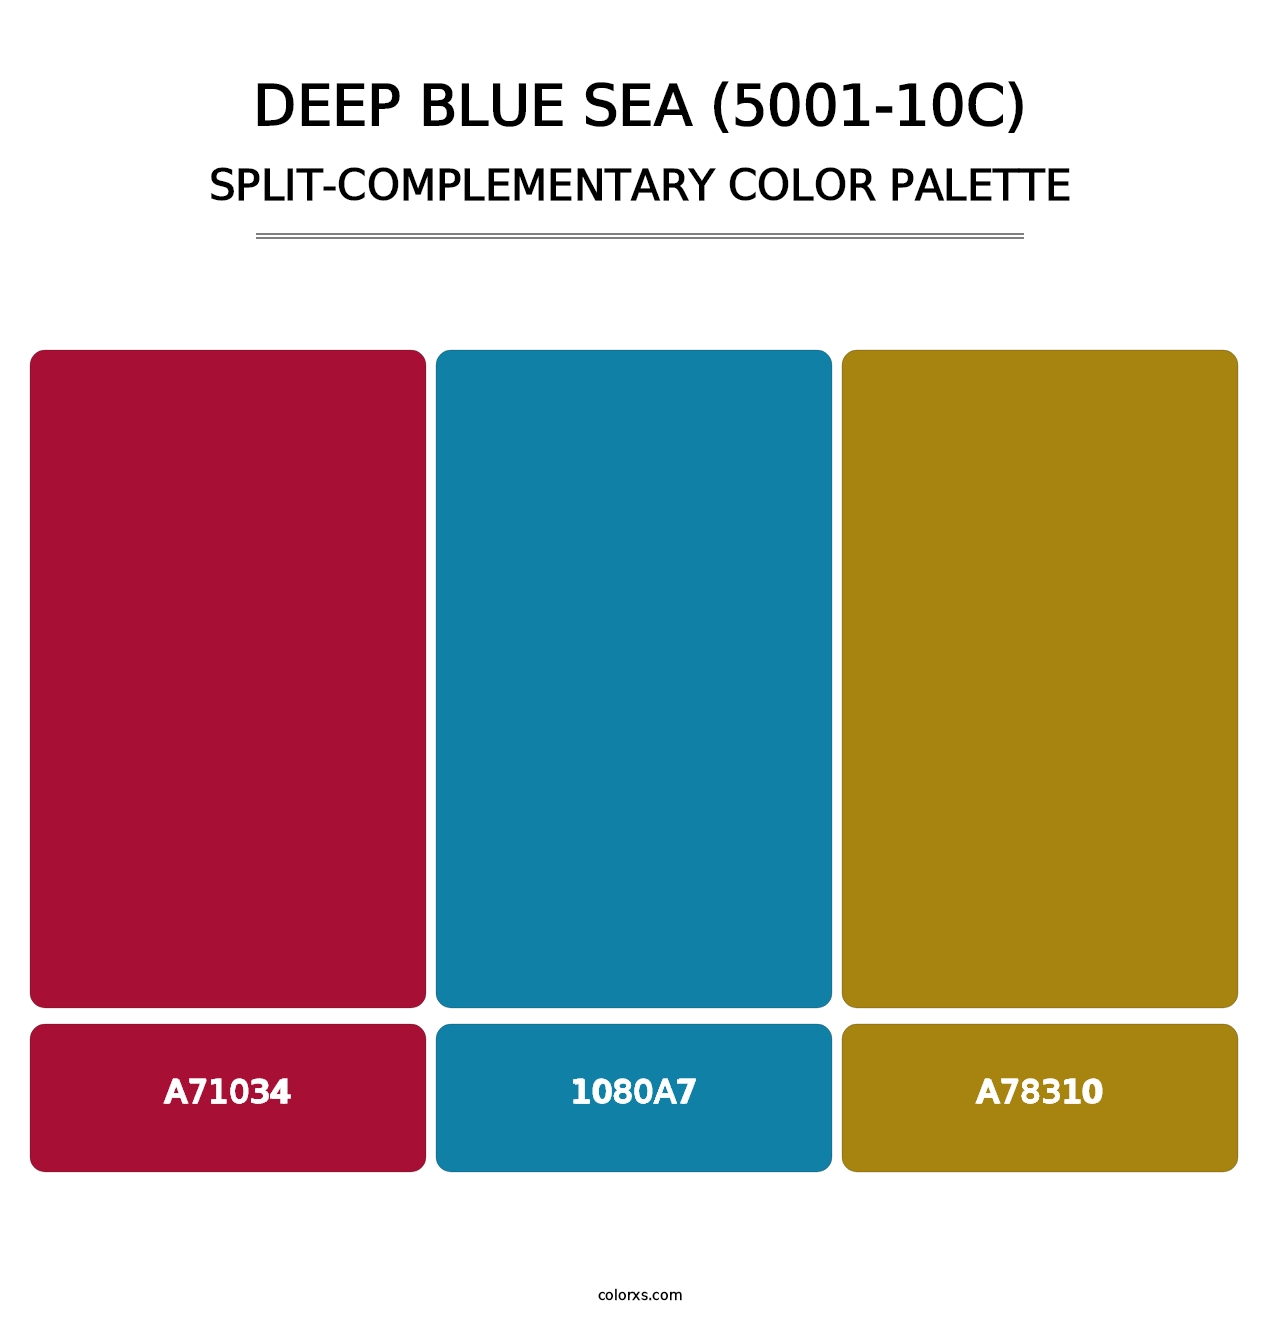 Deep Blue Sea (5001-10C) - Split-Complementary Color Palette